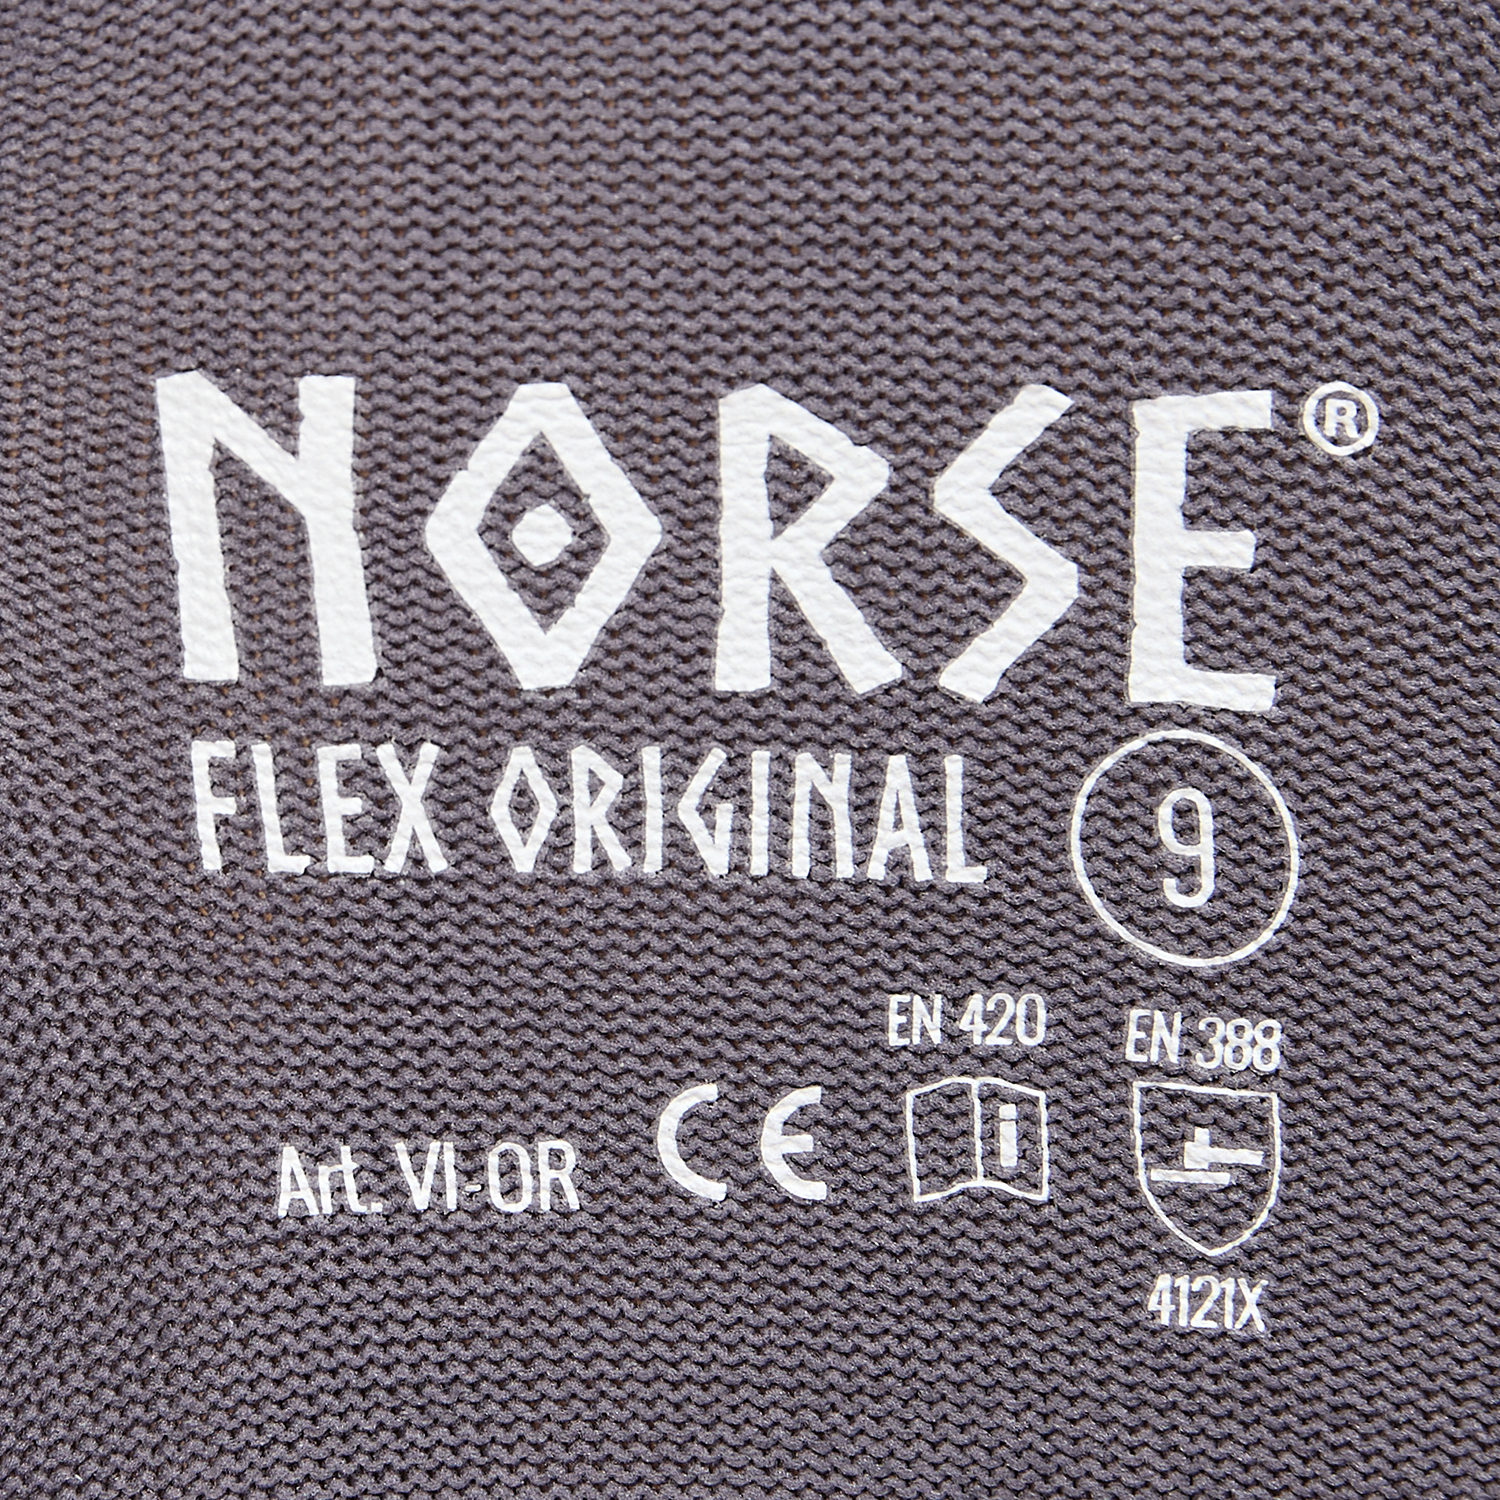 NORSE Flex Original Montagehandschuhe Größe 8